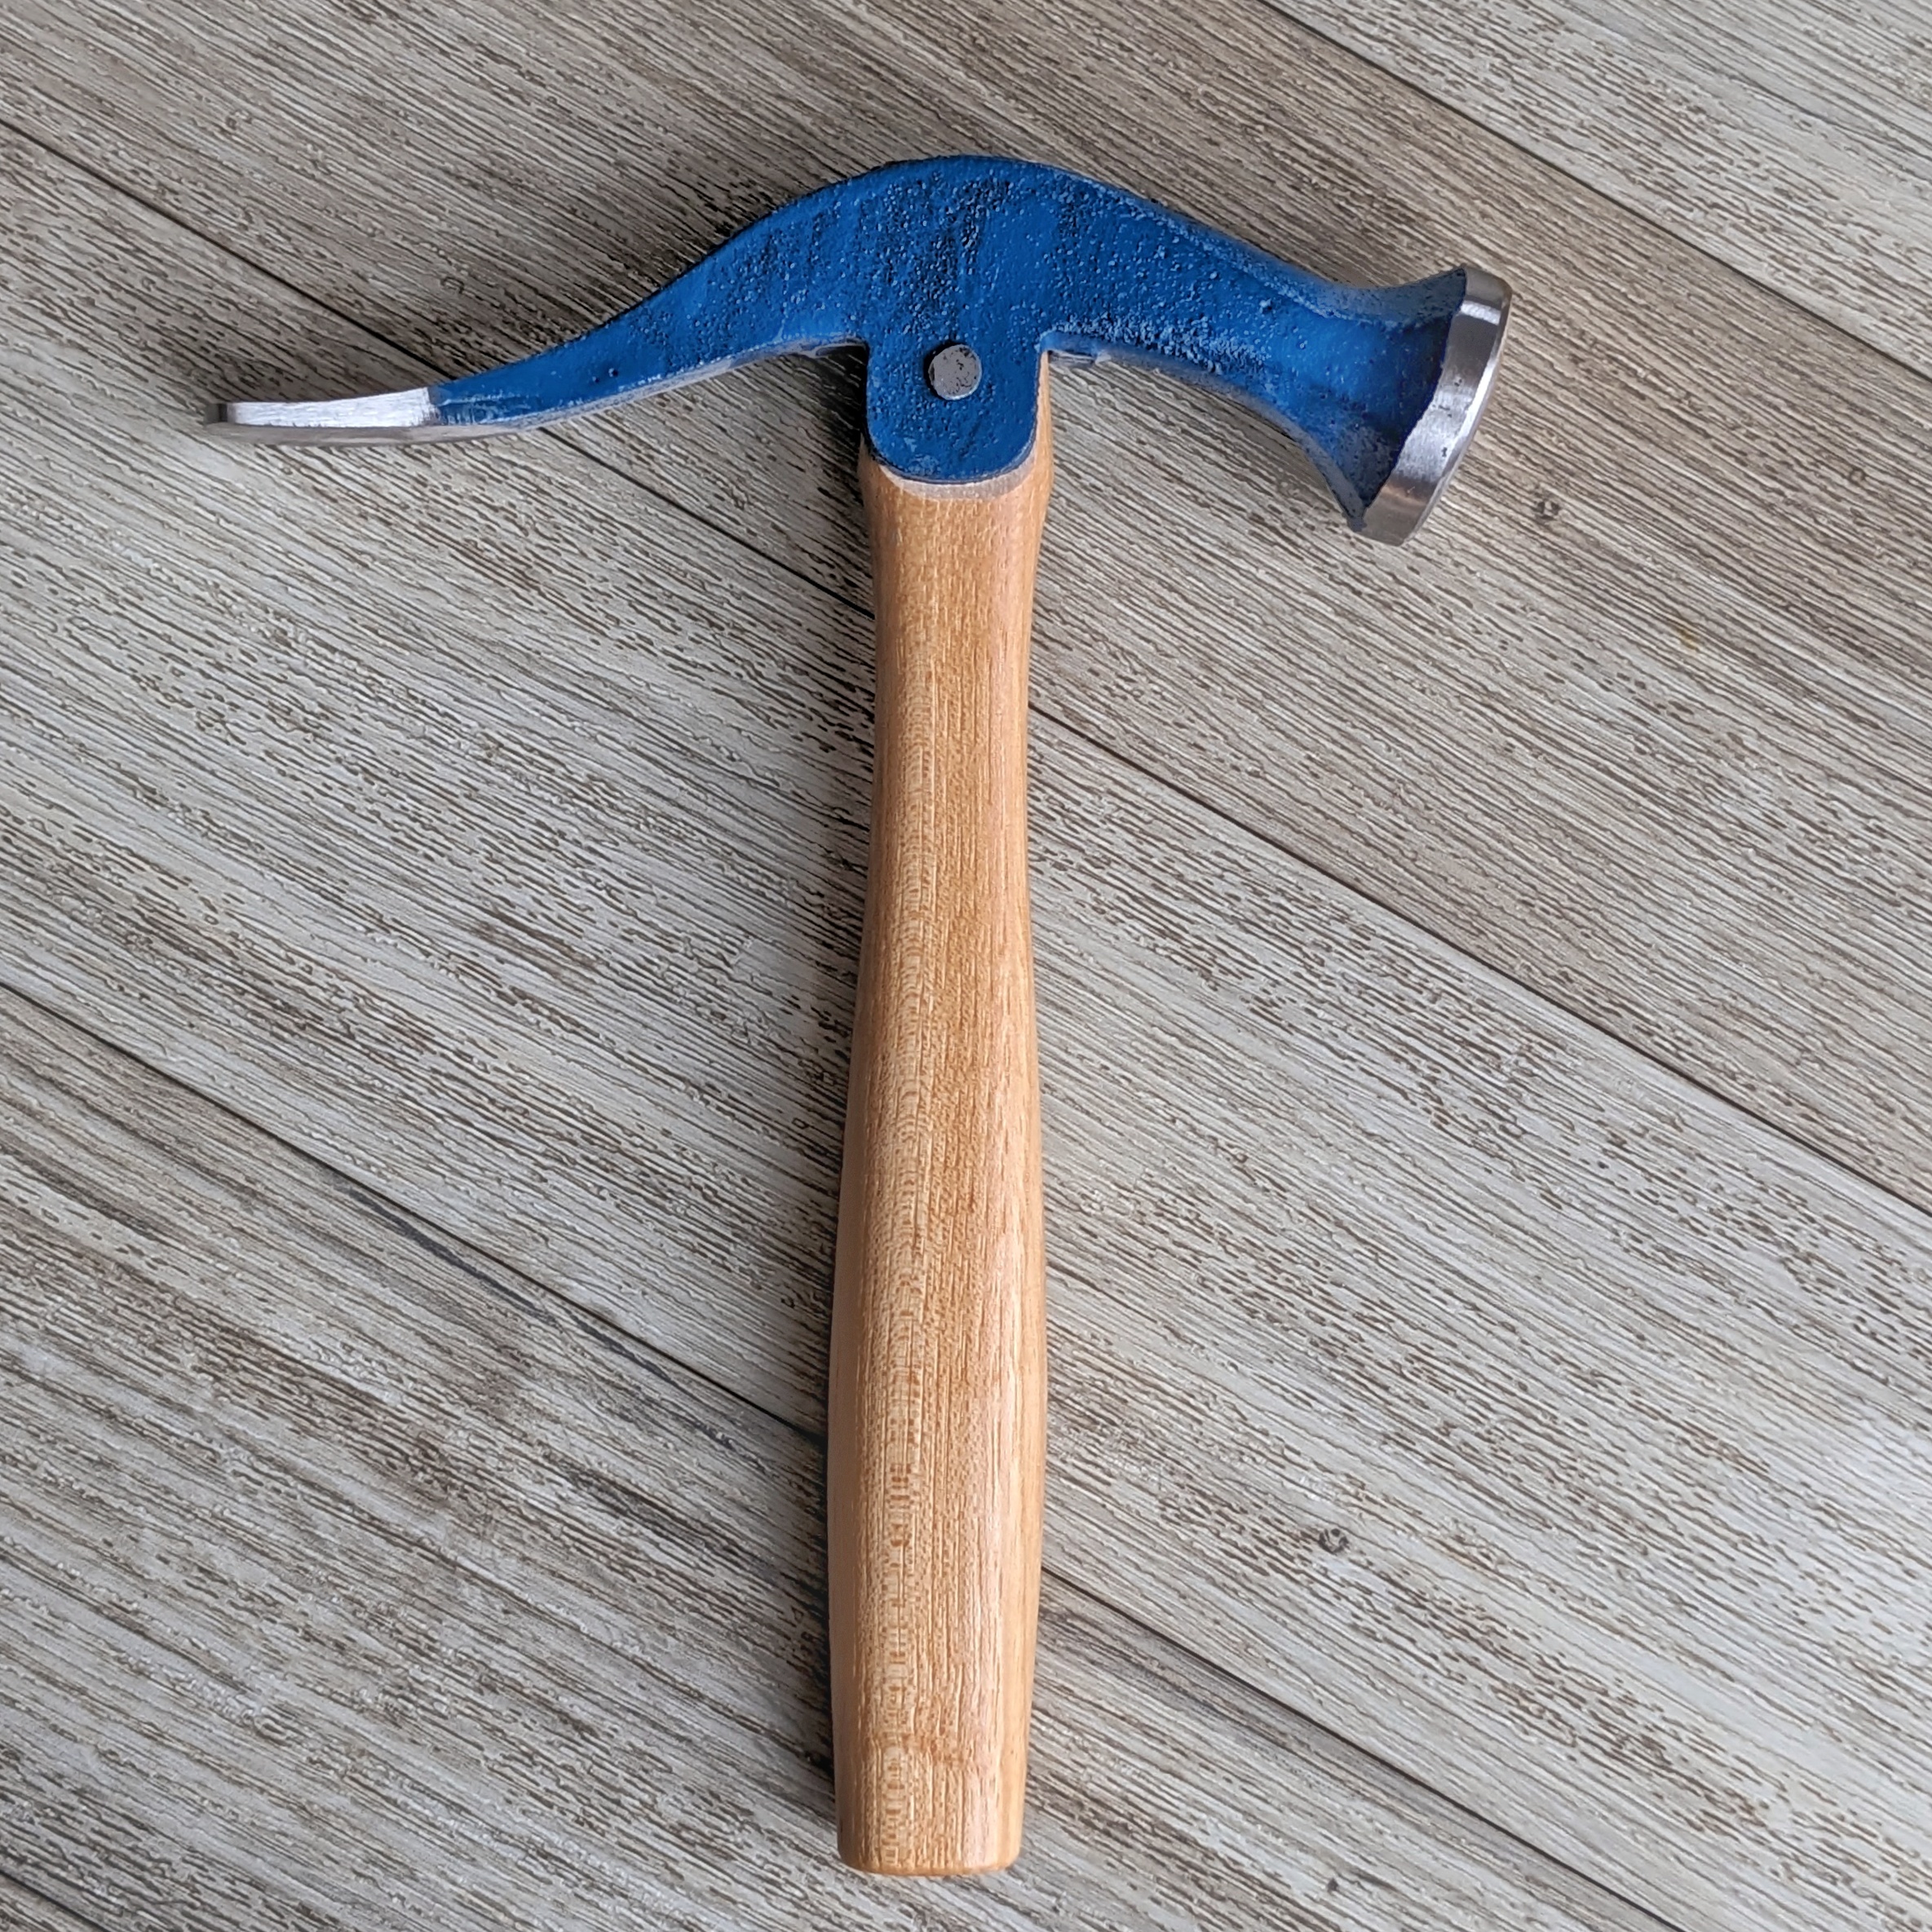 hammer tool